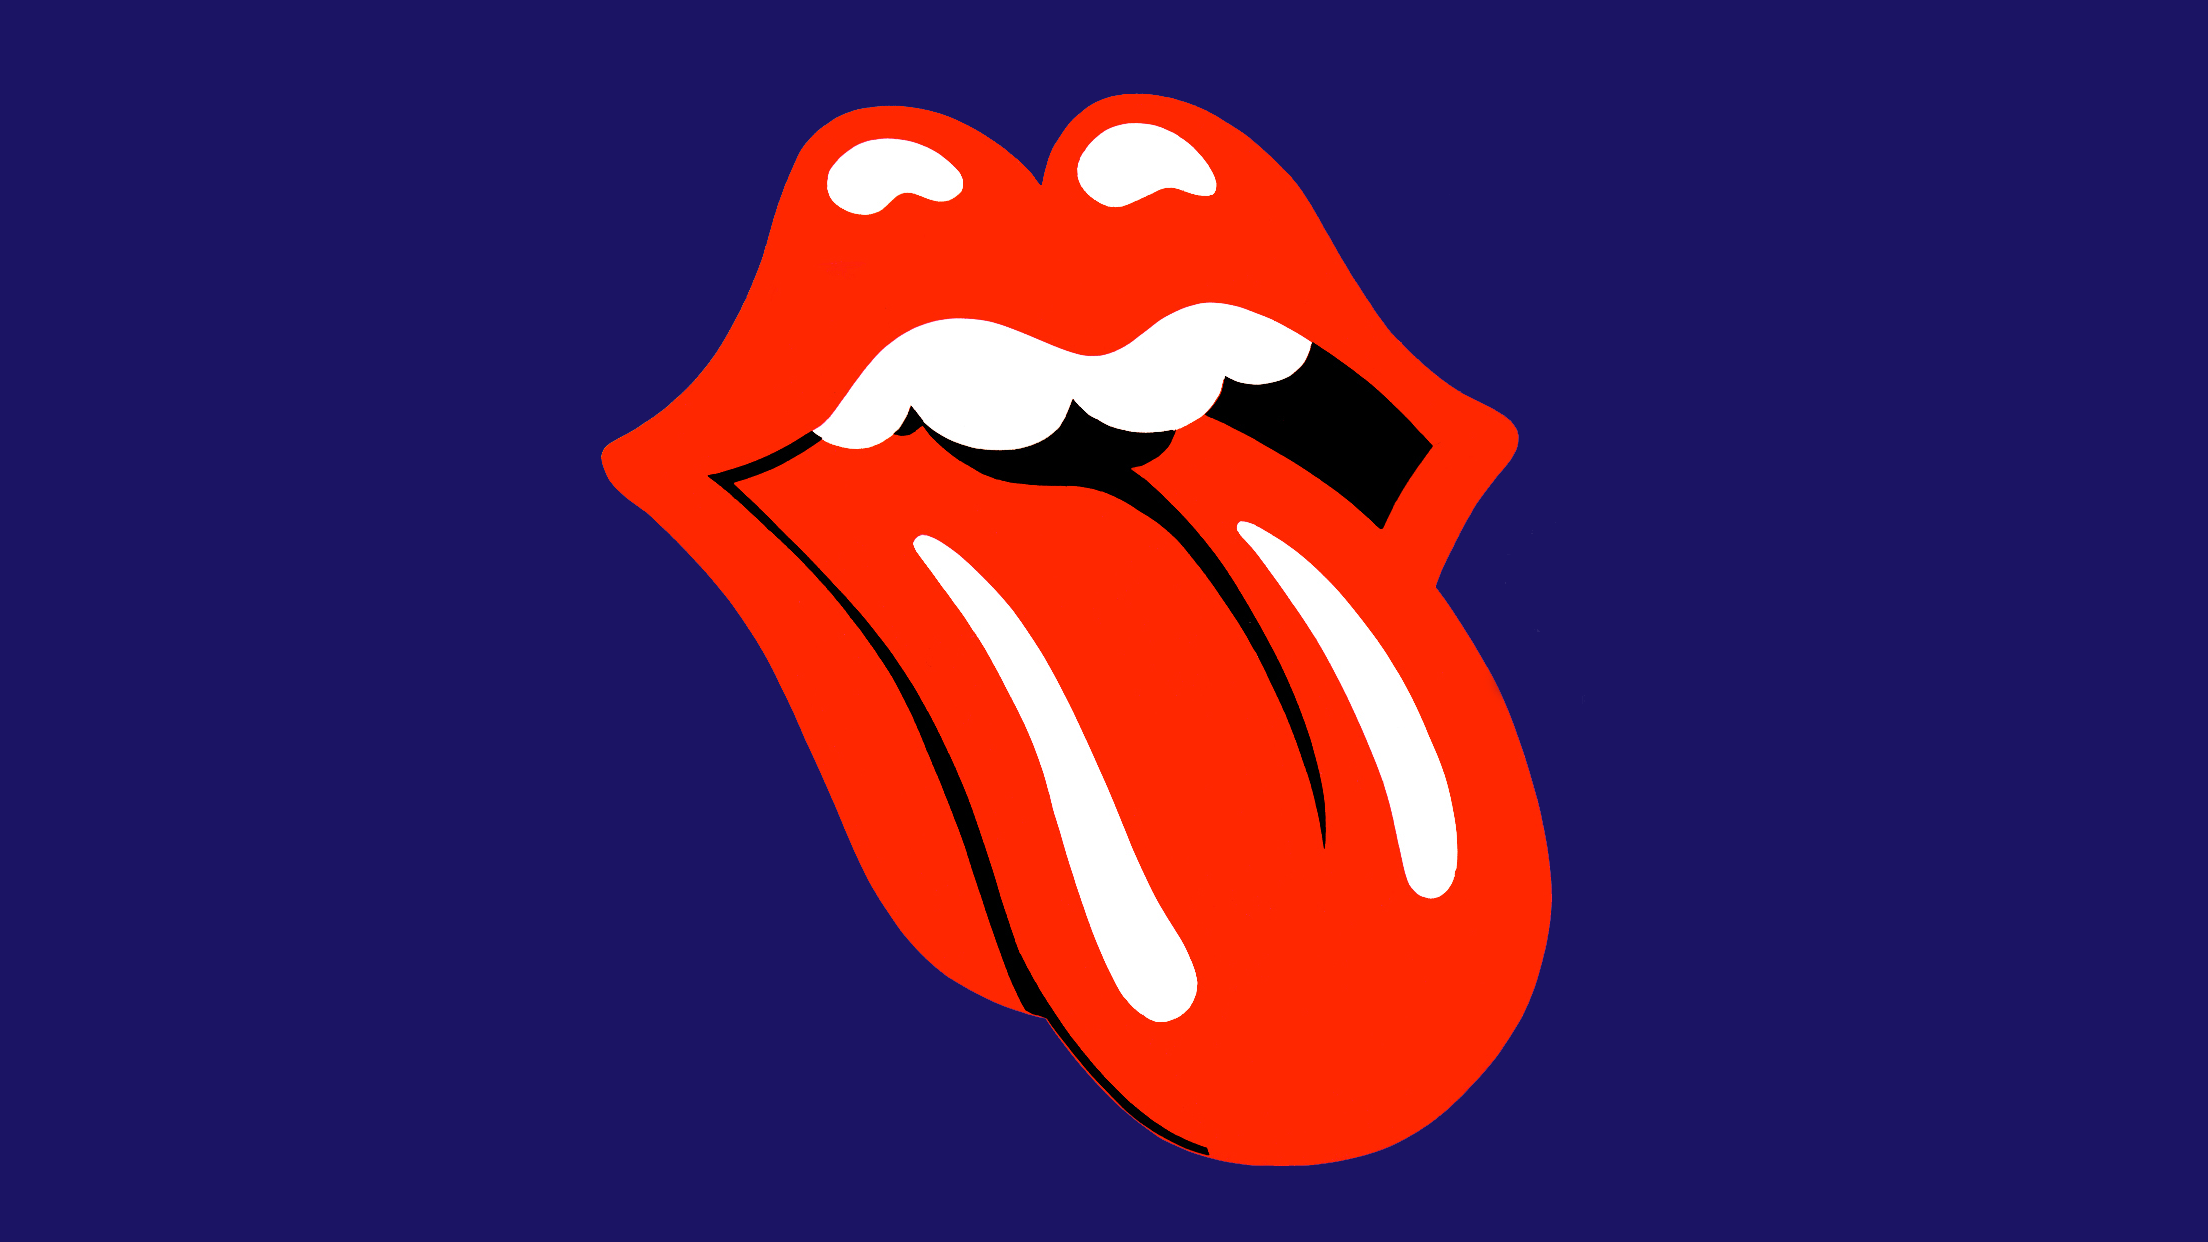 Rolling Stones Wallpaper Tongue - WallpaperSafari